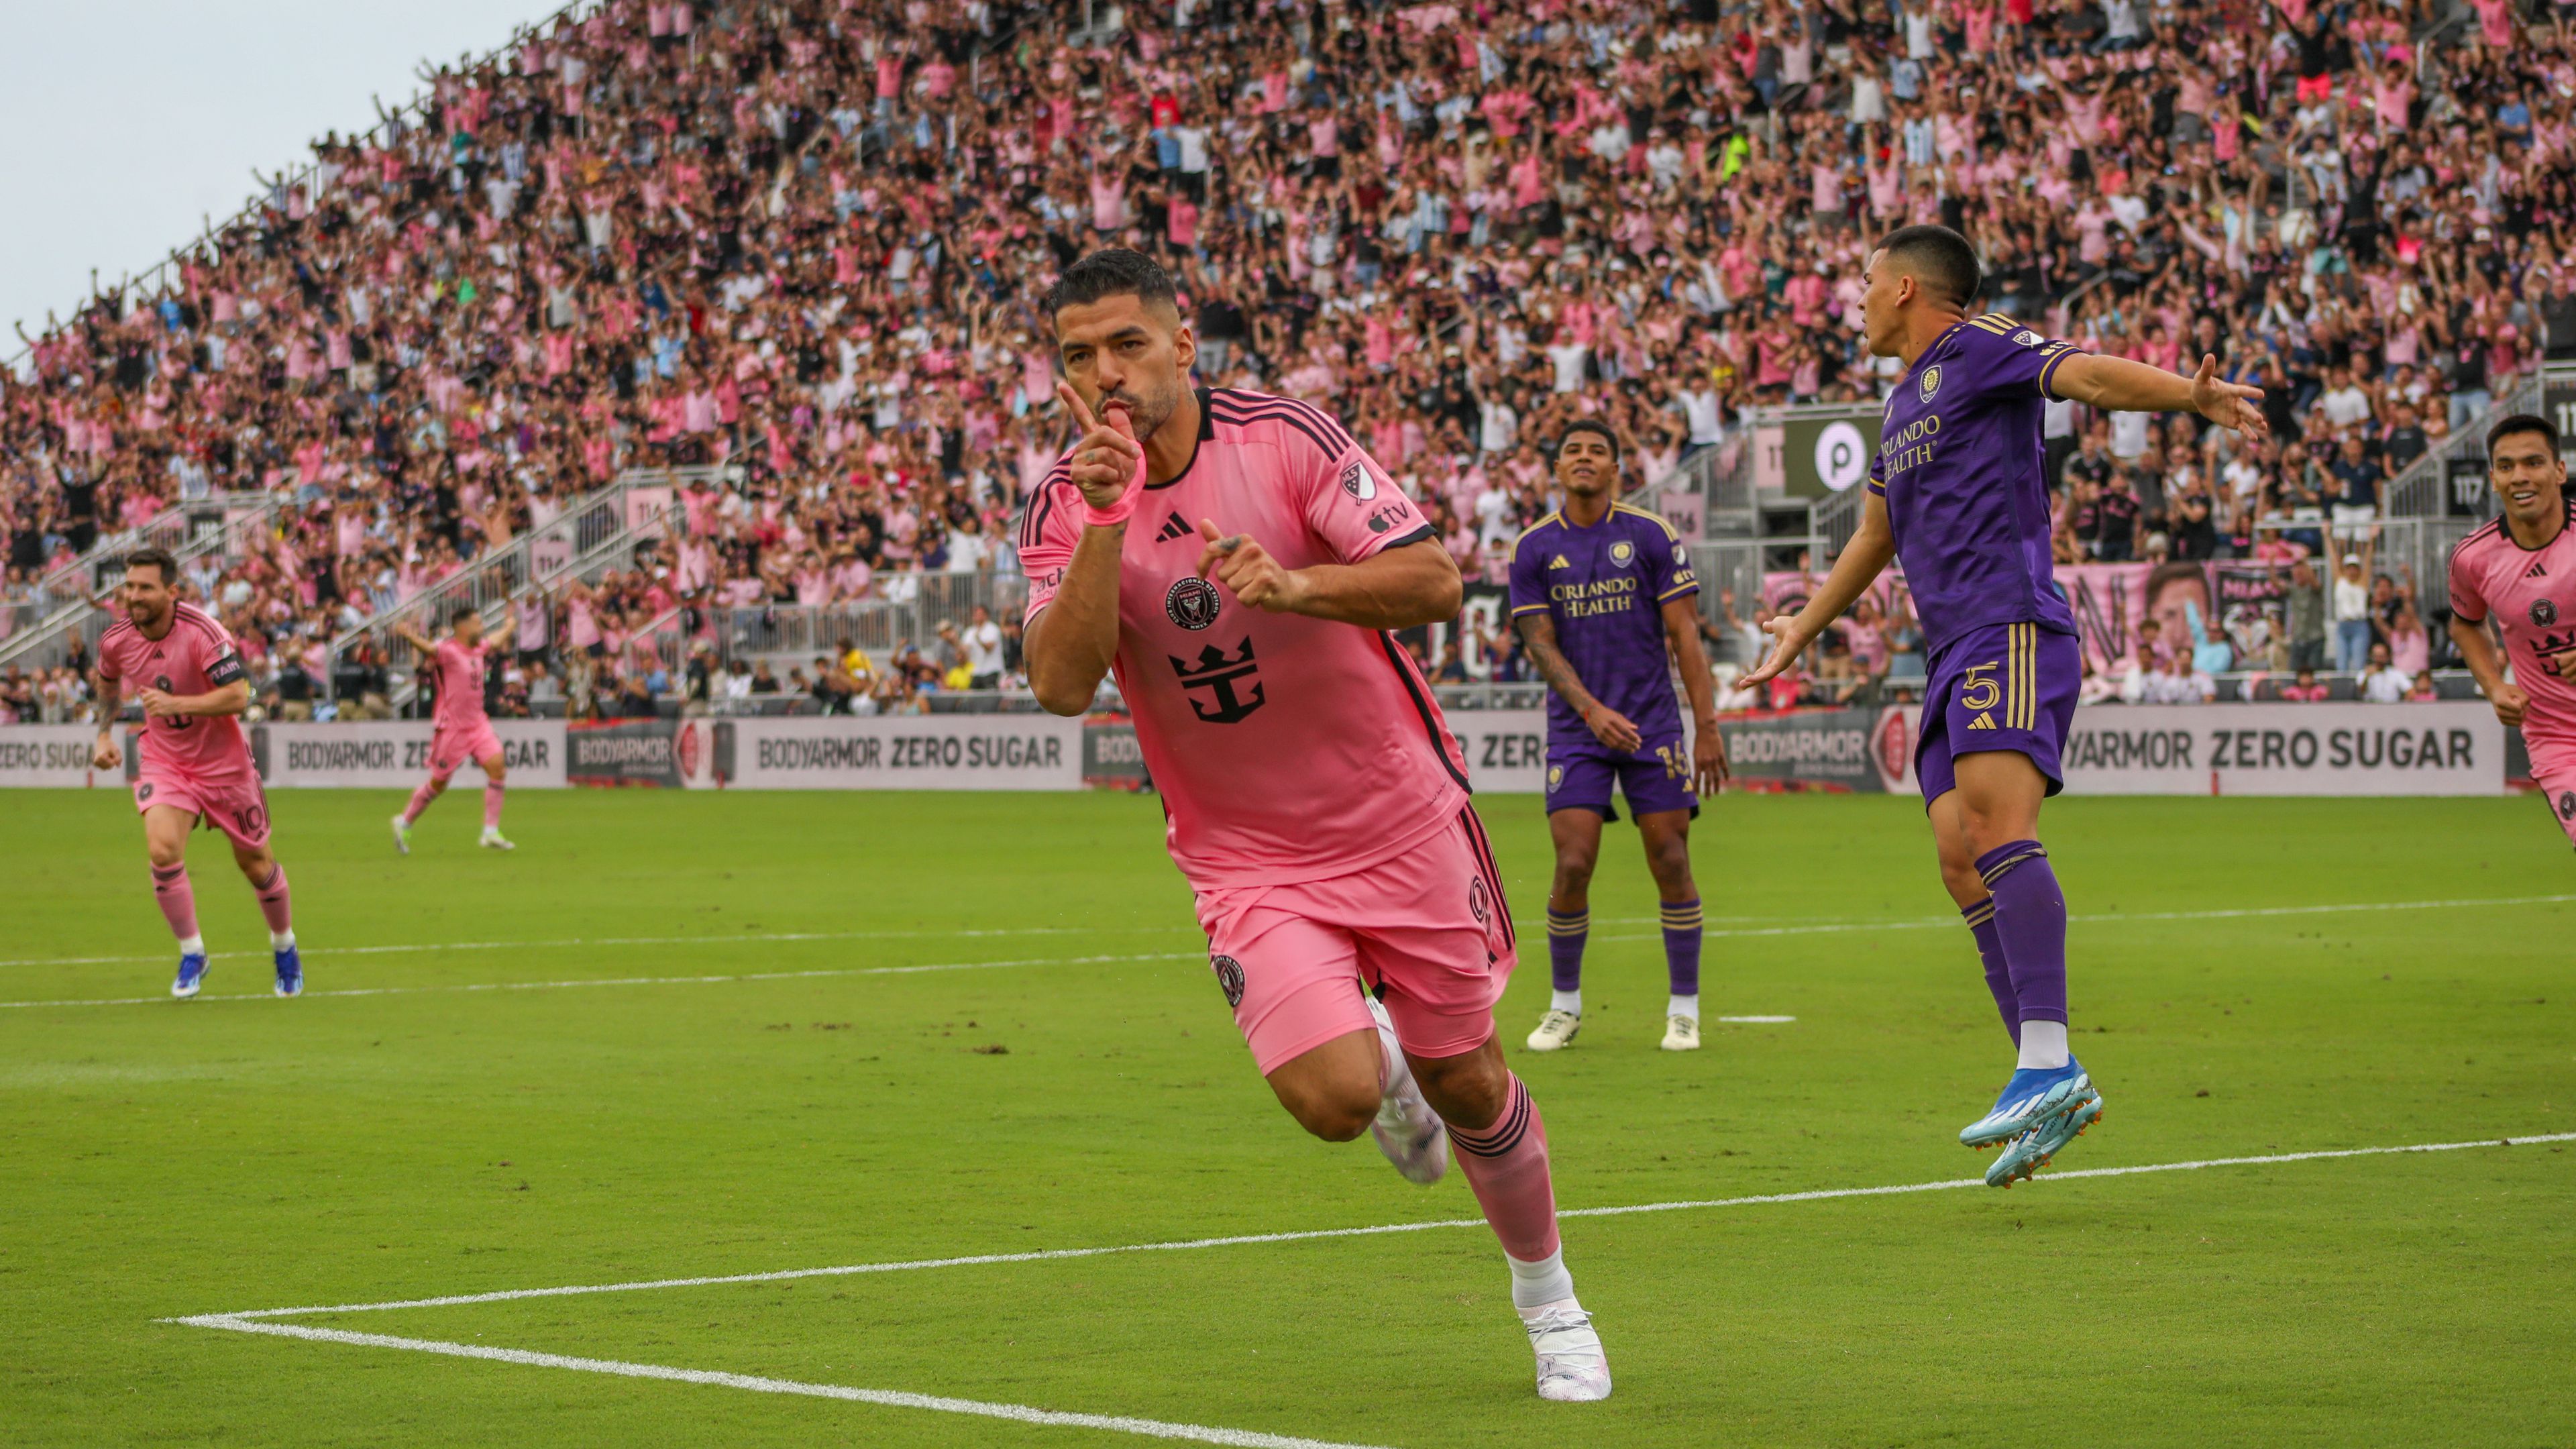 Luis Suárez a negyedik aktív futballistaként érte el az 500-as gólhatárt